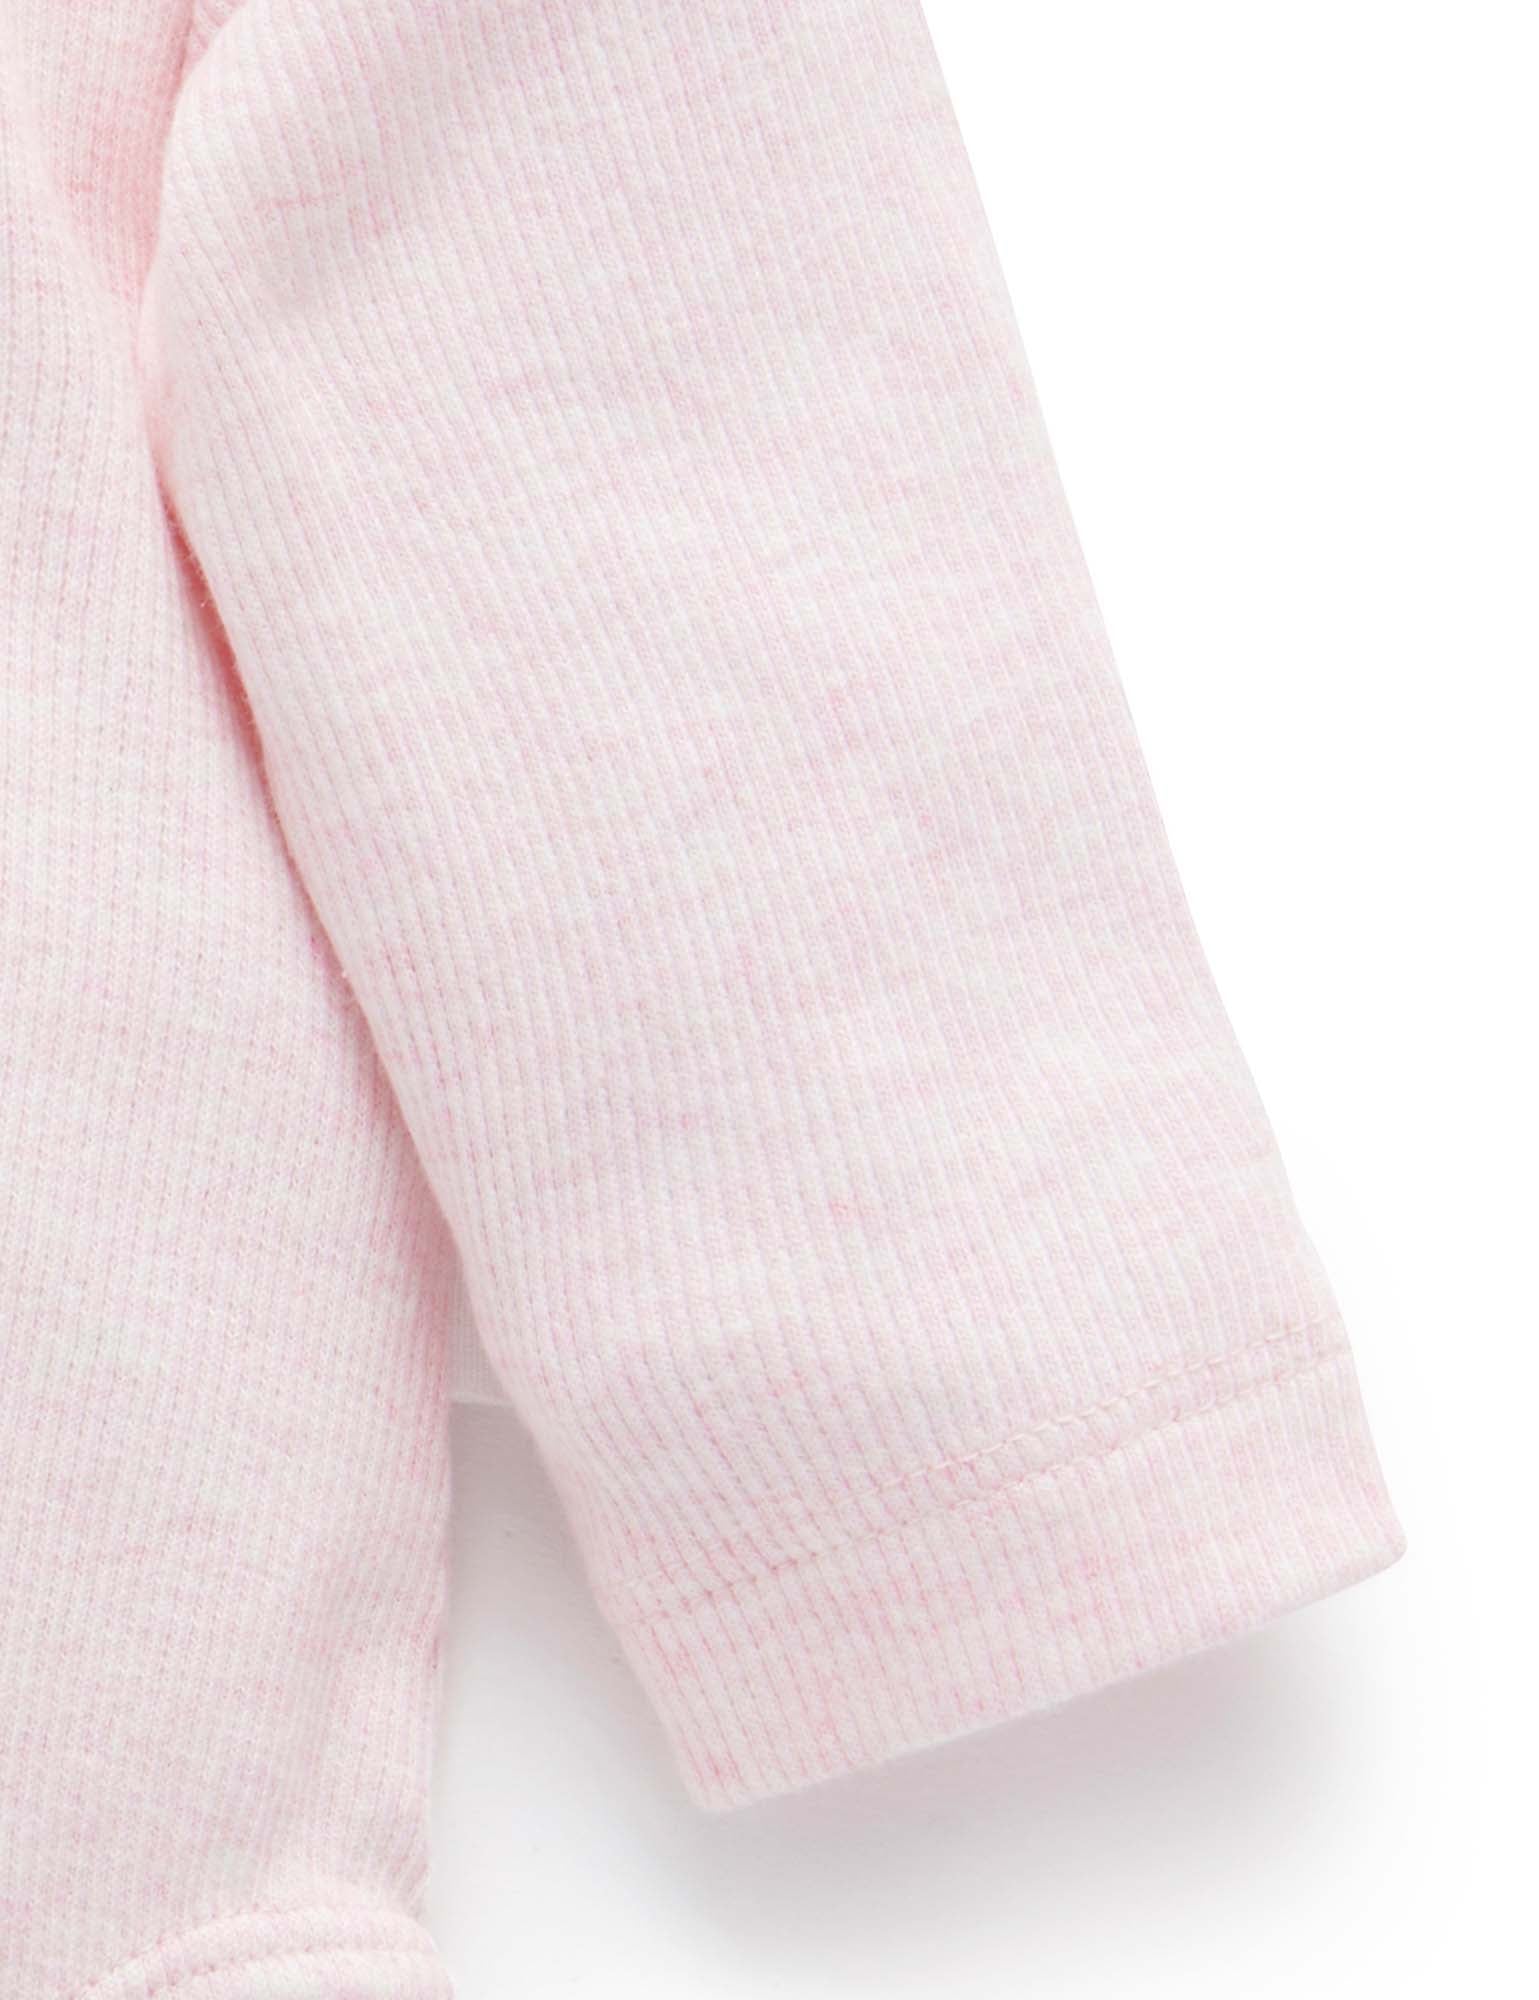 Ribbed Bodysuit Long Sleeve - Pale Pink Melange - Purebaby